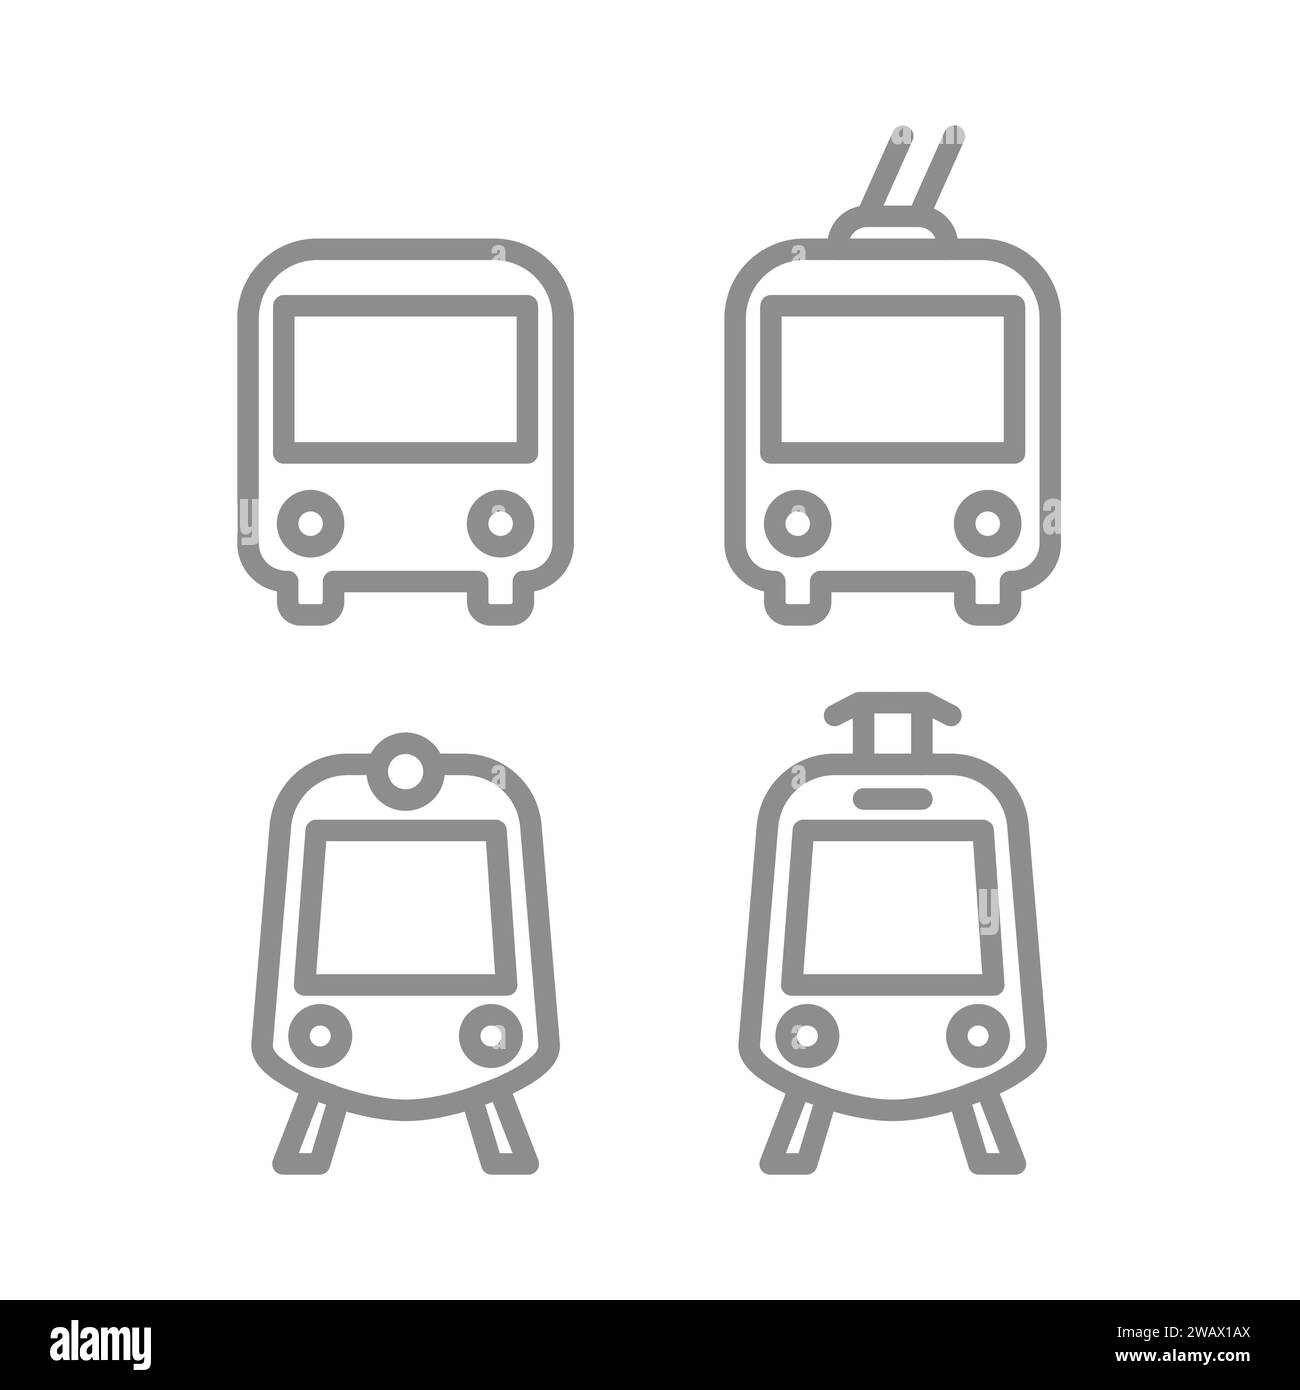 Vektorsymbole für öffentliche Verkehrsmittel. Bus-, Straßenbahn-, Zug- und U-Bahn-Symbol-Set. Bearbeitbare Kontur. Stock Vektor